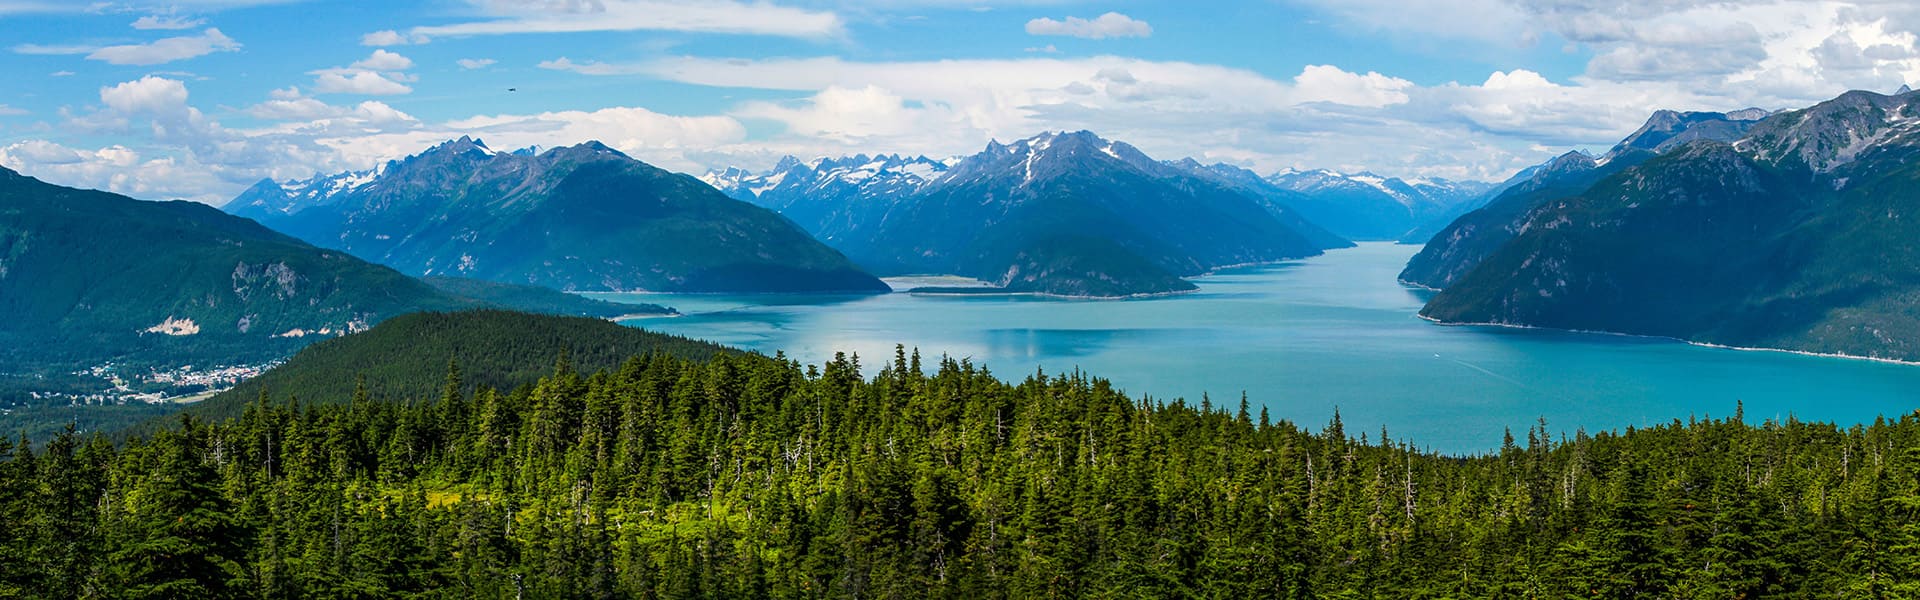 10 Tage Alaska, Hin- und Rückfahrt ab Seattle: Hubbard-Gletscher, Skagway und Juneau